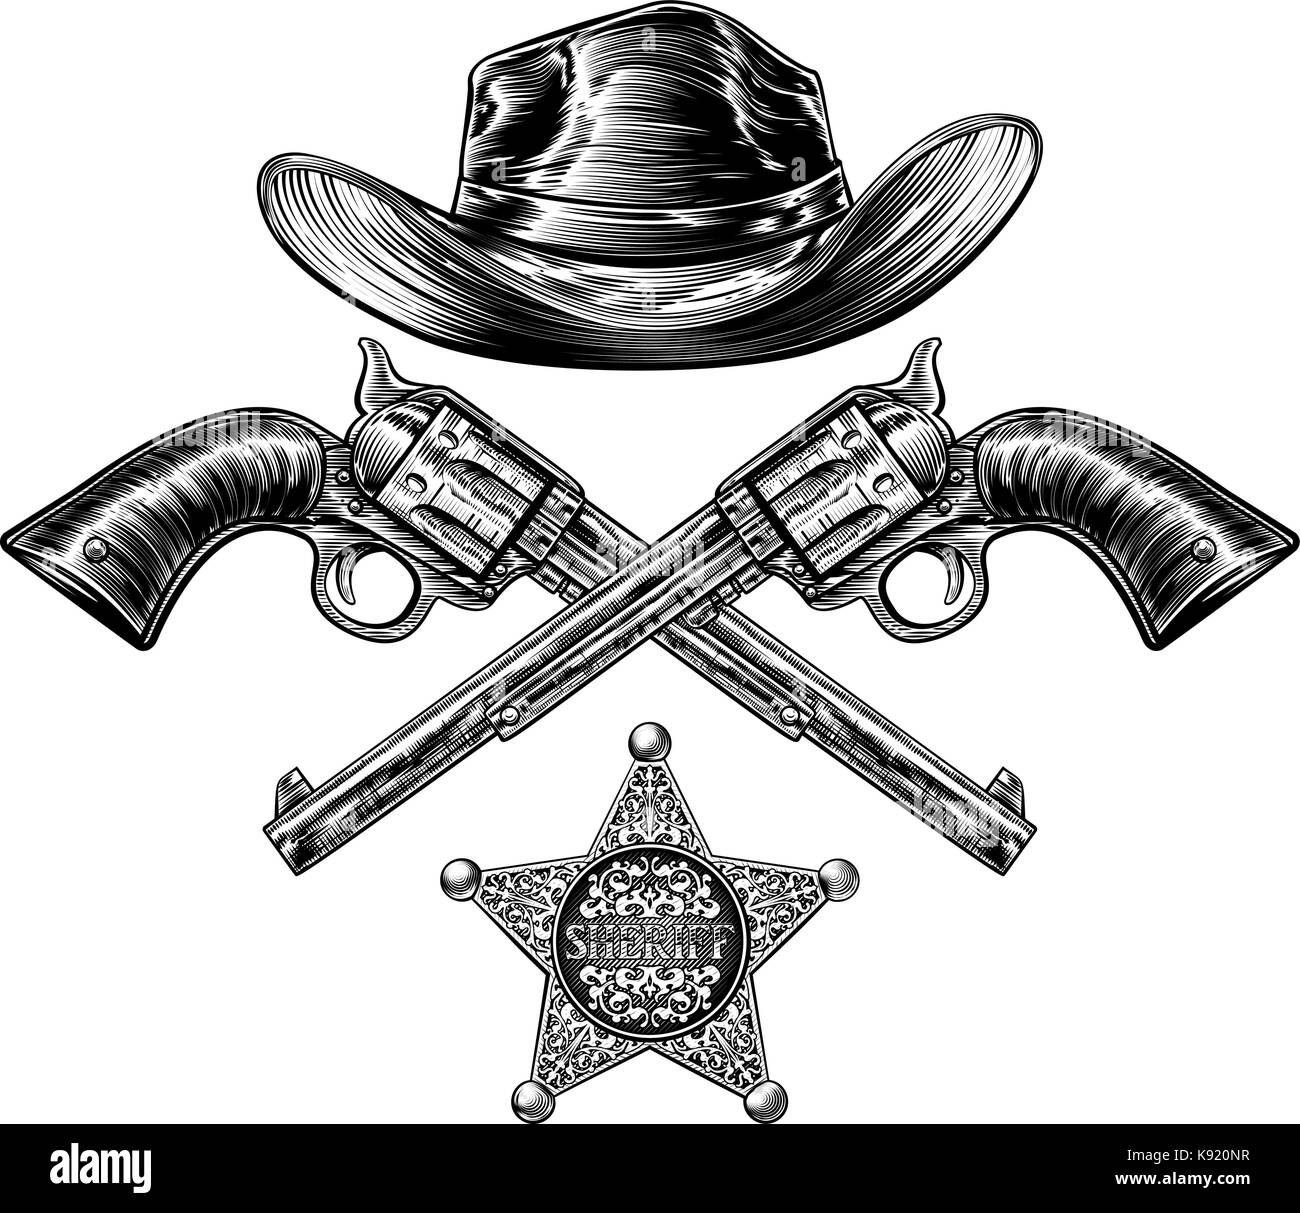 Pistolets et chapeau de cowboy sheriff avec badge star Illustration de Vecteur